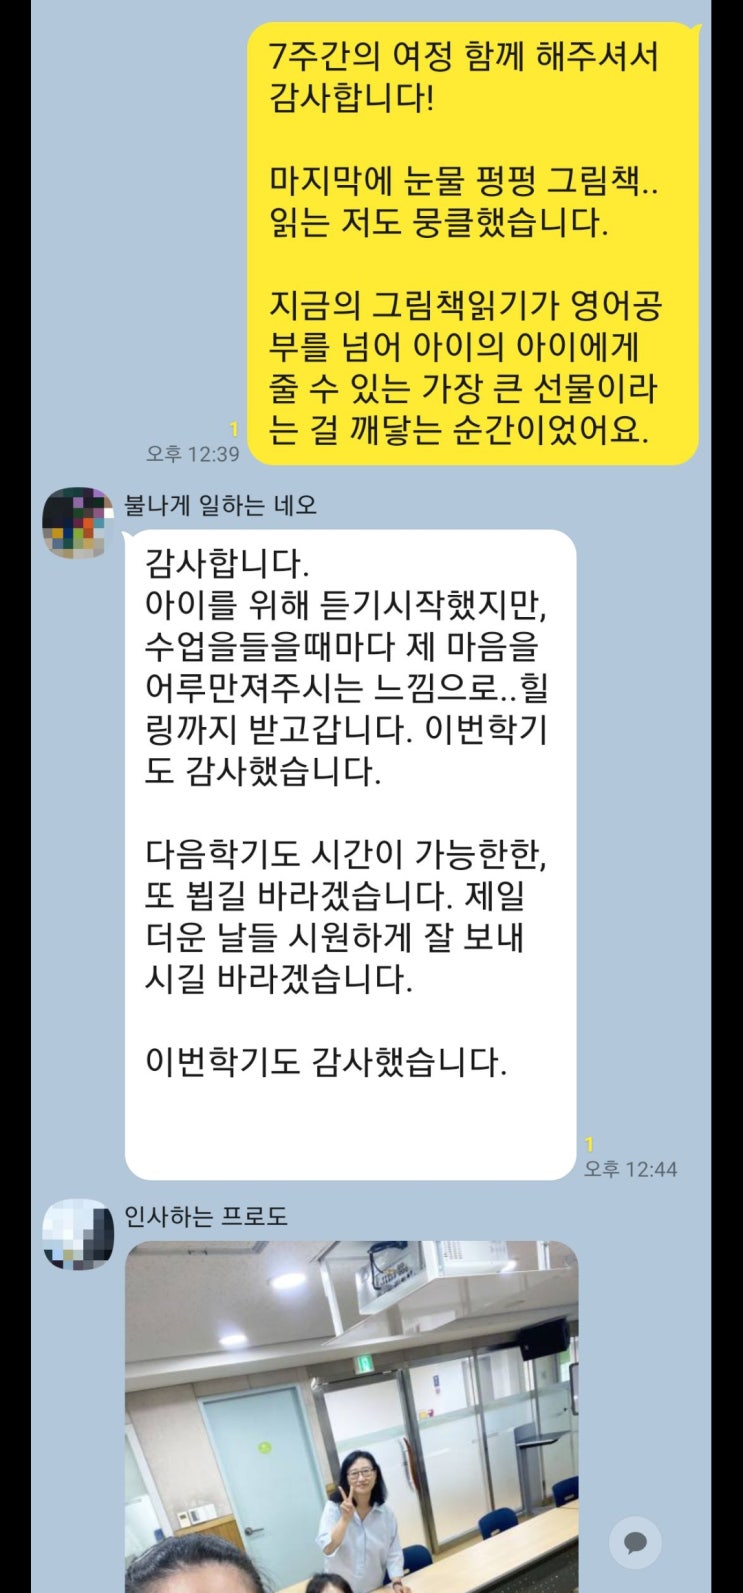 용두 어린이영어도서관 엄마표영어강좌 후기